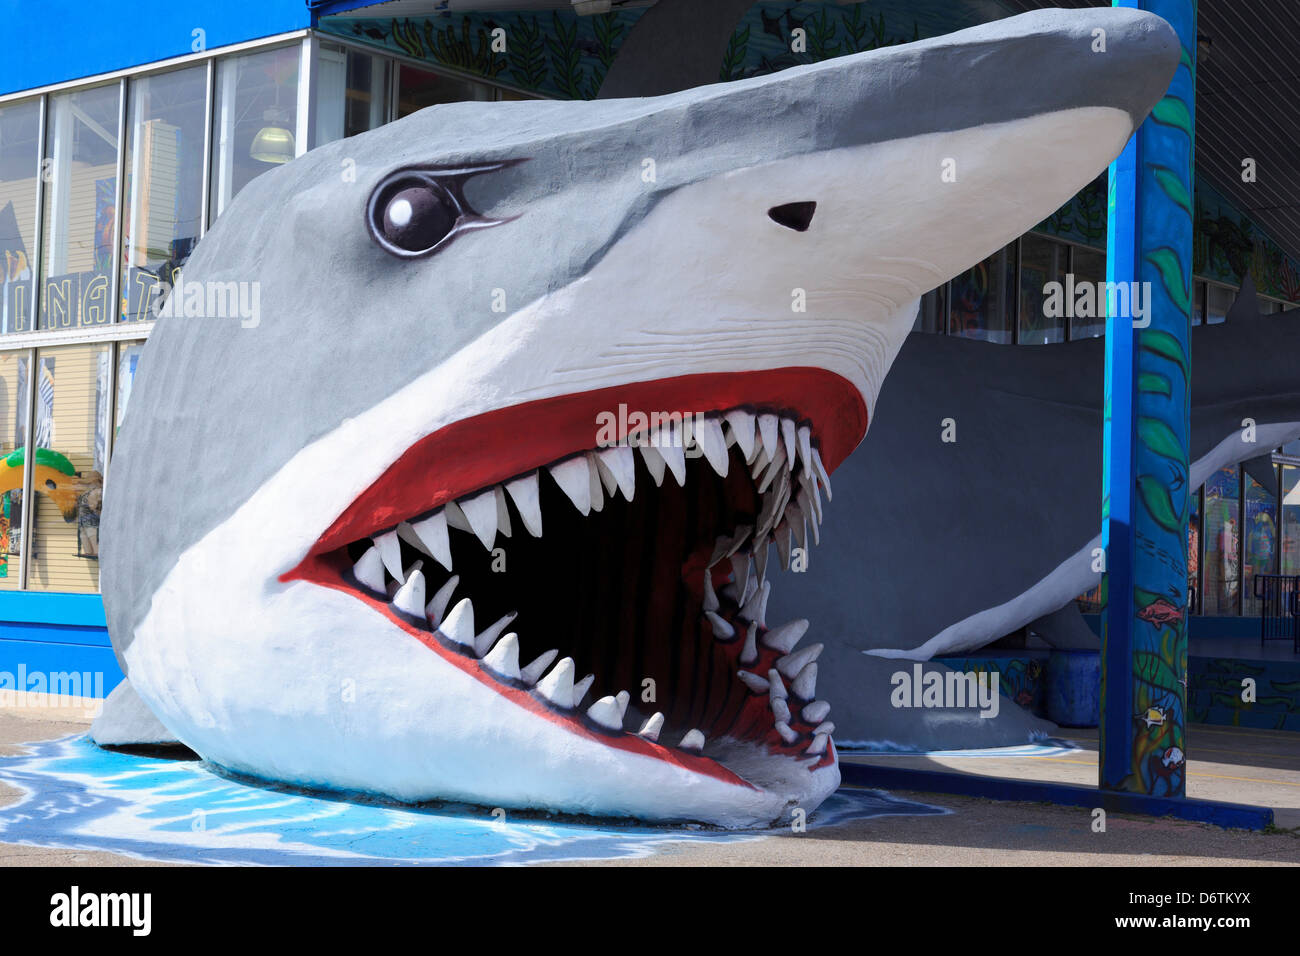 Corpus Christi Texas USA Surf Shop with Shark entrance Stock Photo - Alamy